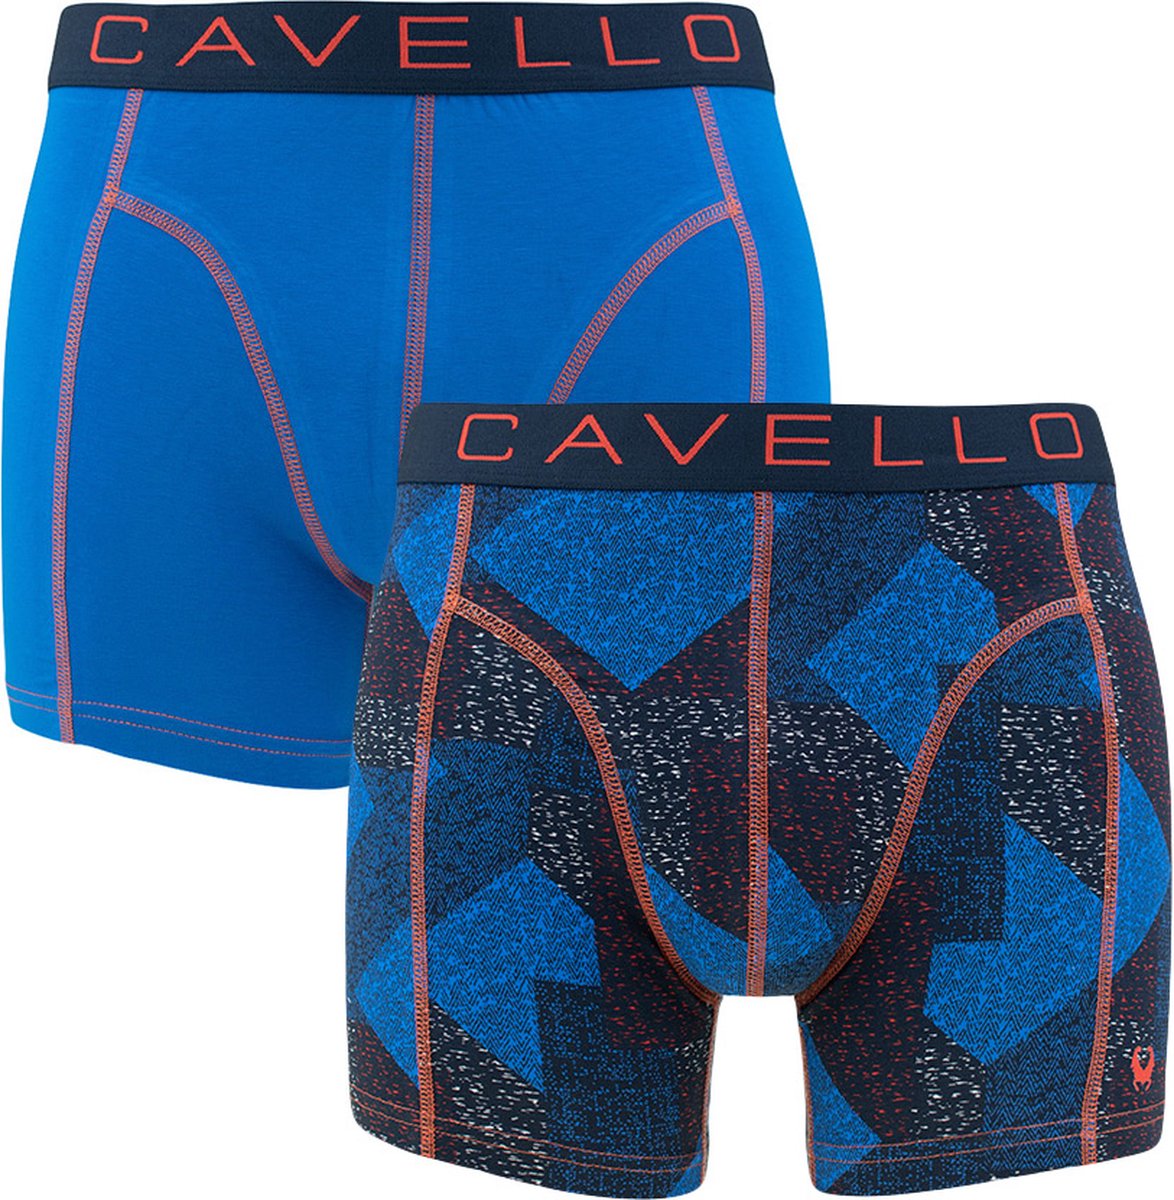 Cavello 2P boxers blocks multi - M